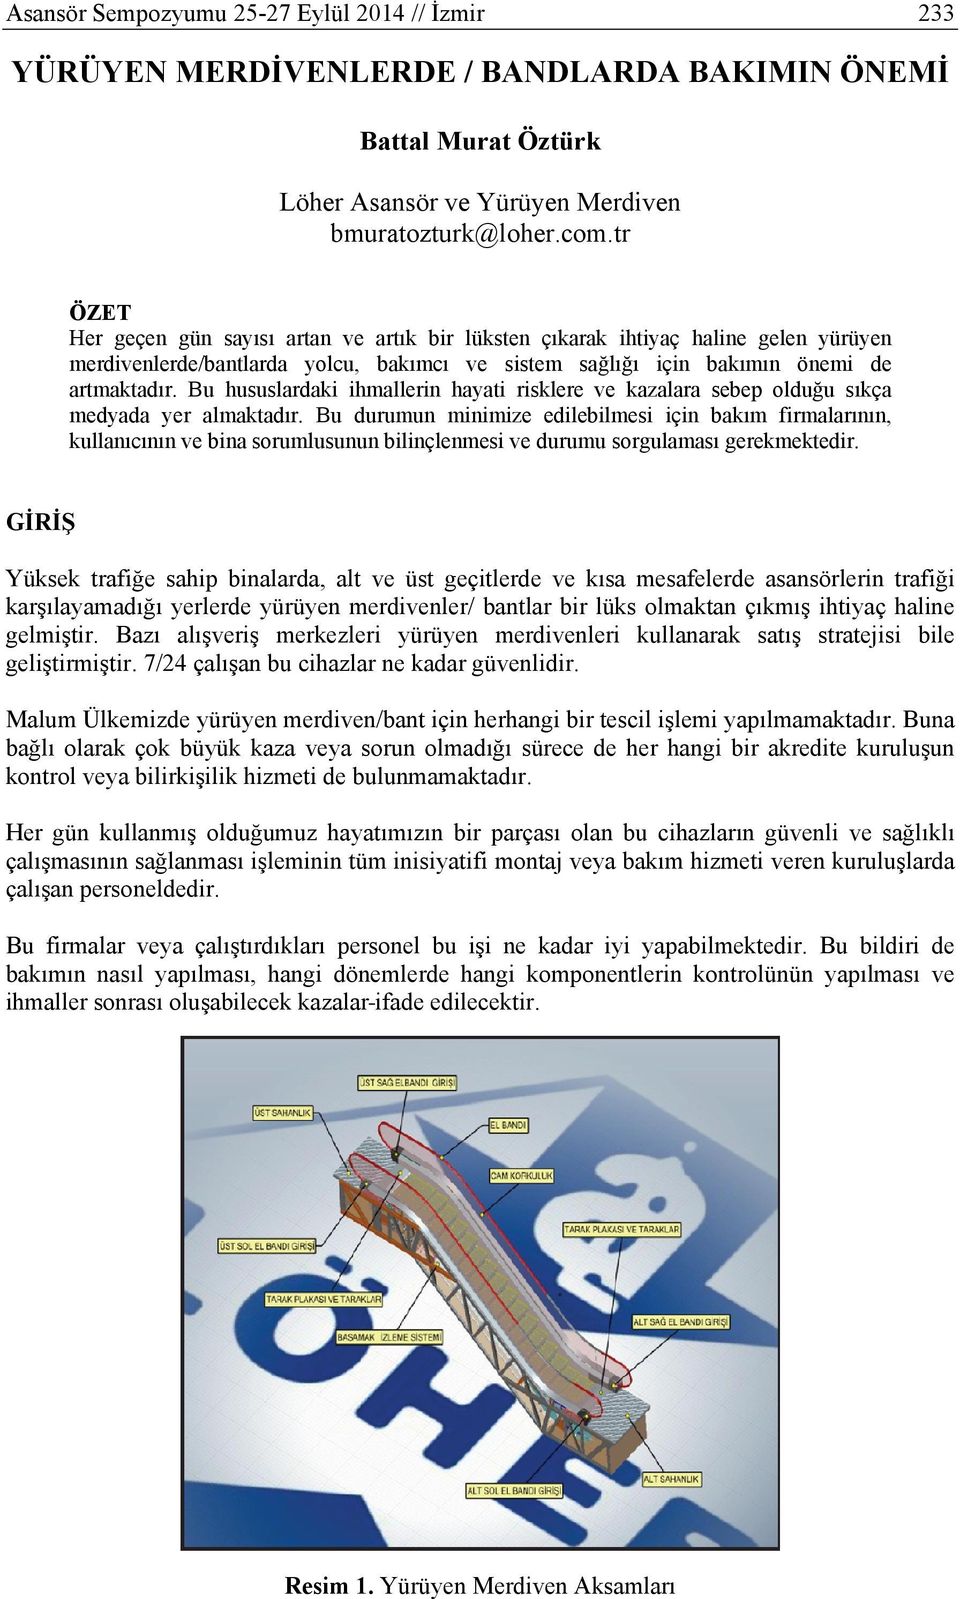 YÜRÜYEN MERDİVENLERDE / BANDLARDA BAKIMIN ÖNEMİ - PDF Free Download